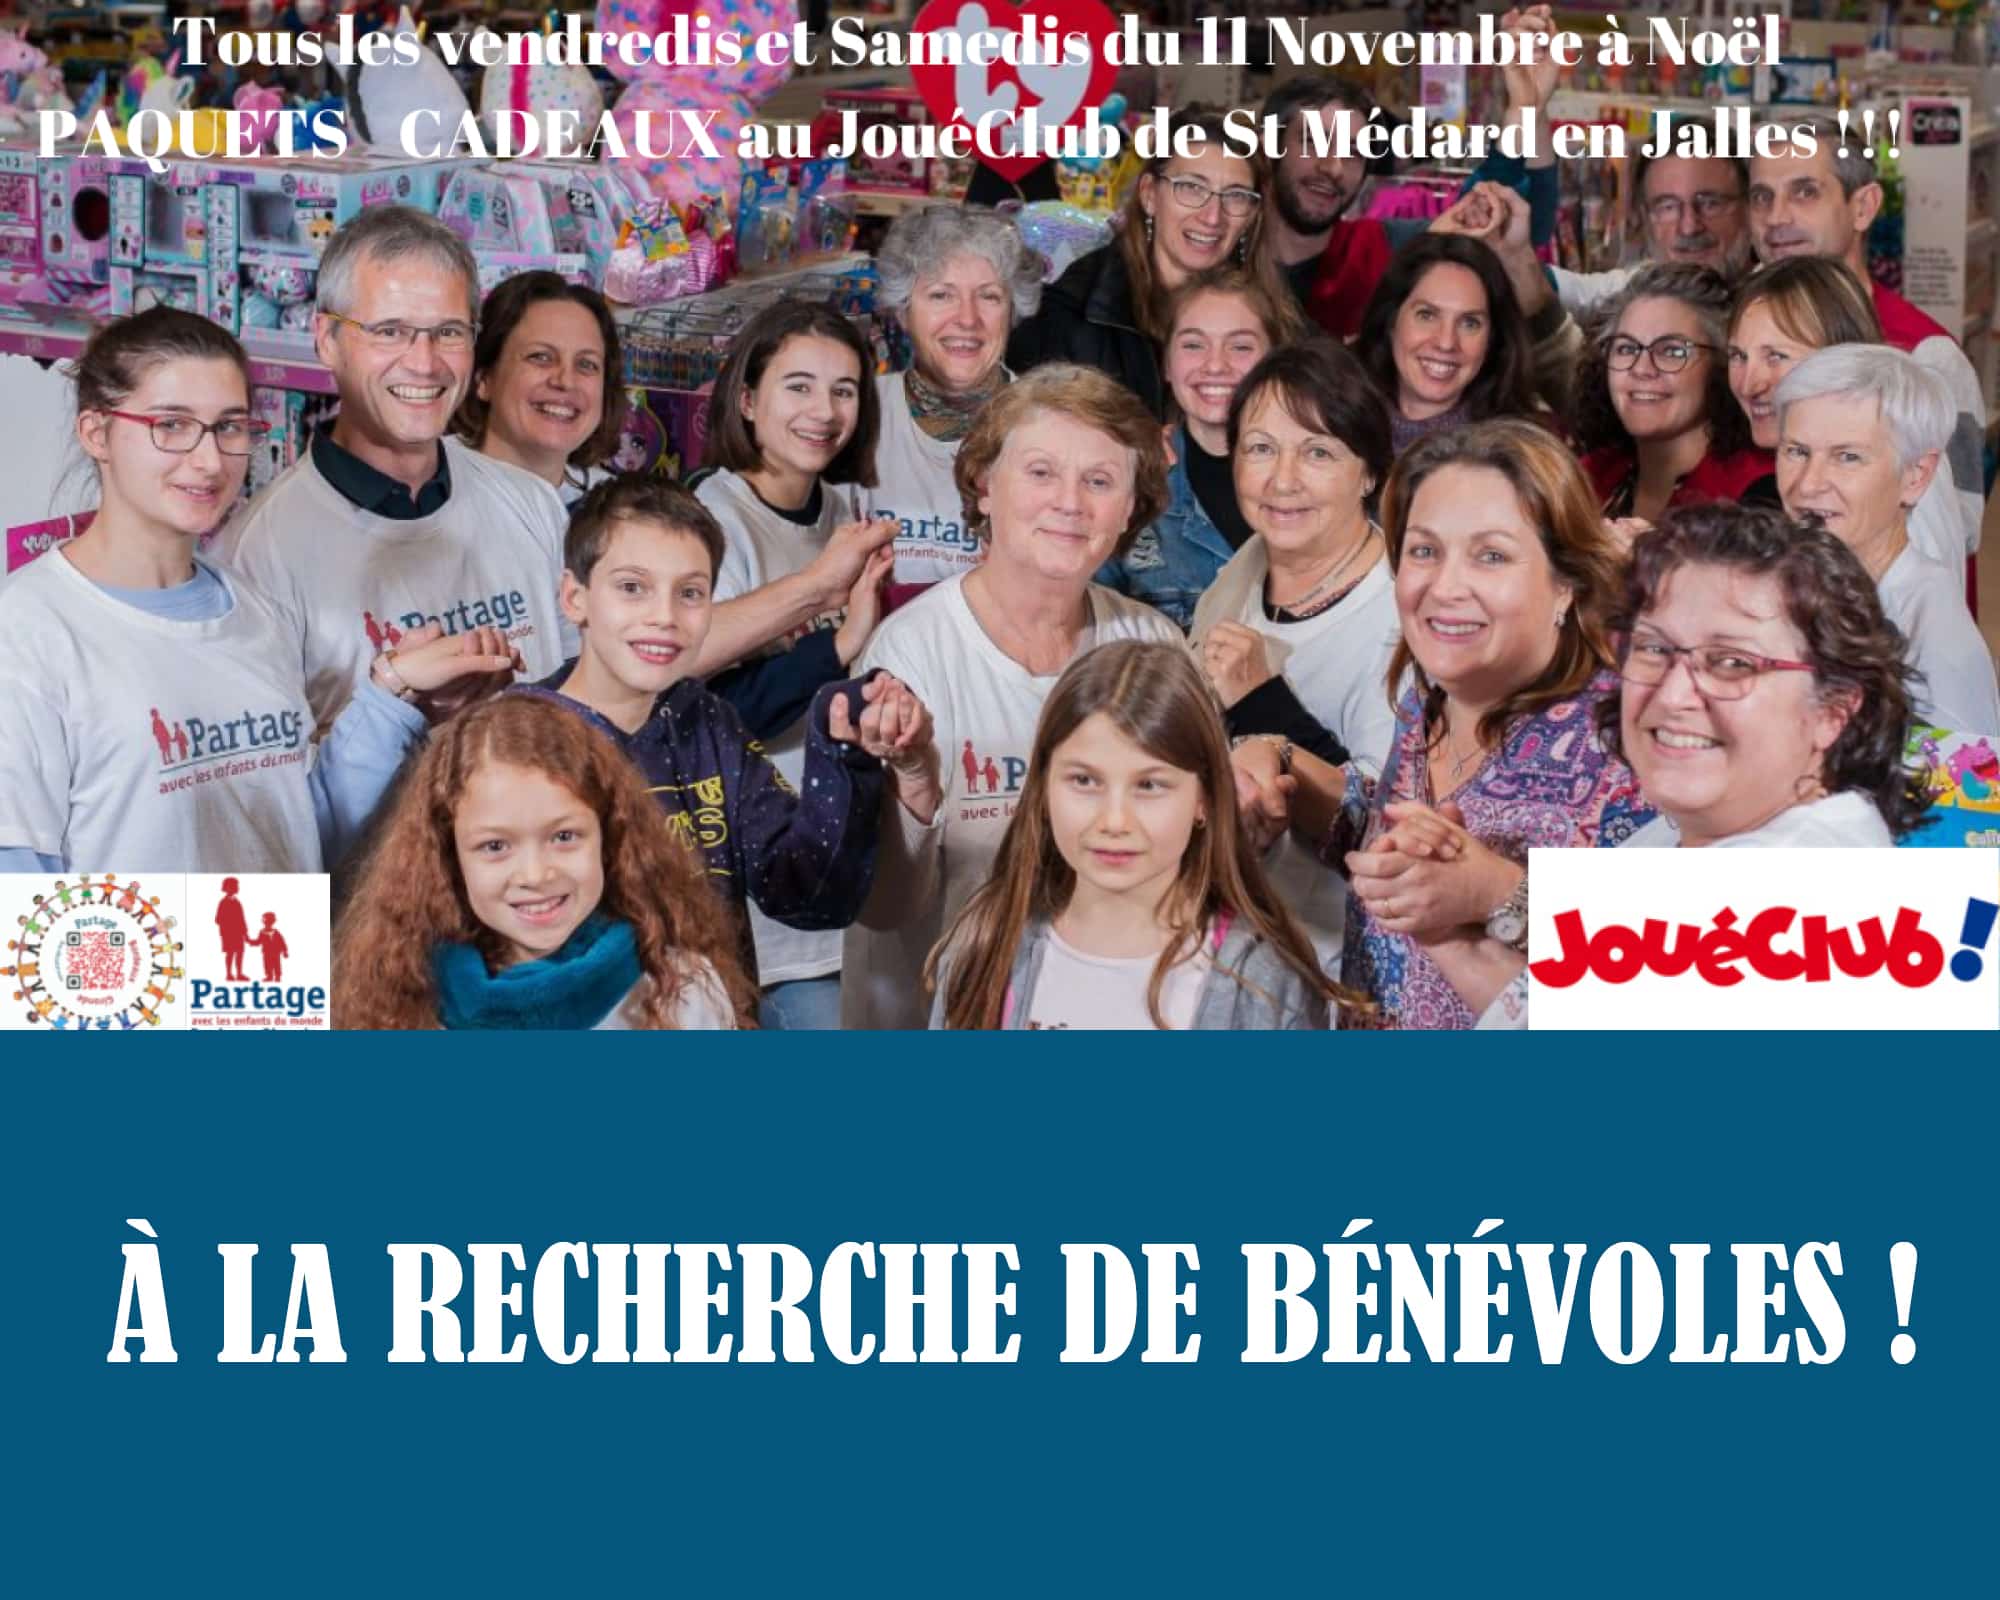 PARTAGE Bordeaux recherche des bénévoles pour faire des paquets cadeaux au Joué Club